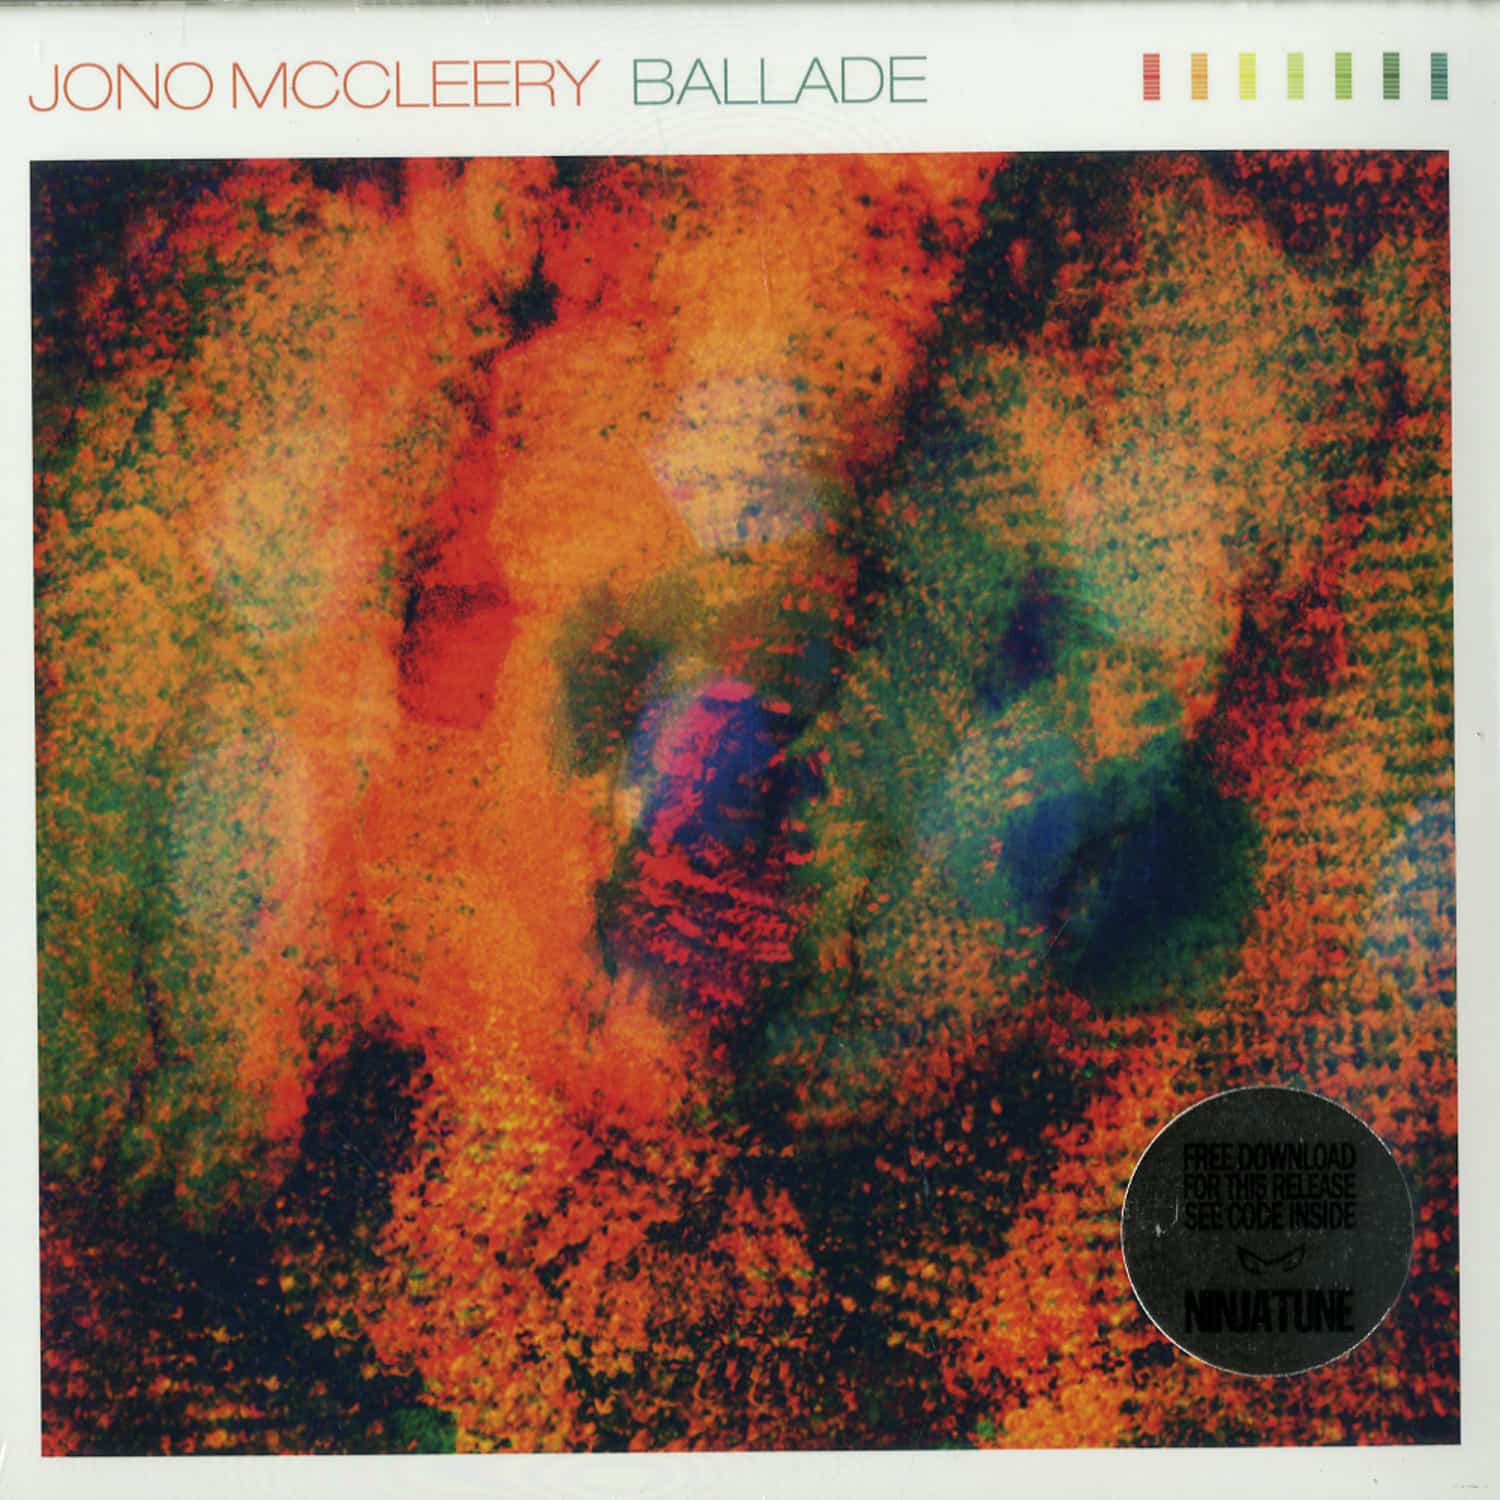 Jono McCleery - BALLADE - DJRUM REMIX 